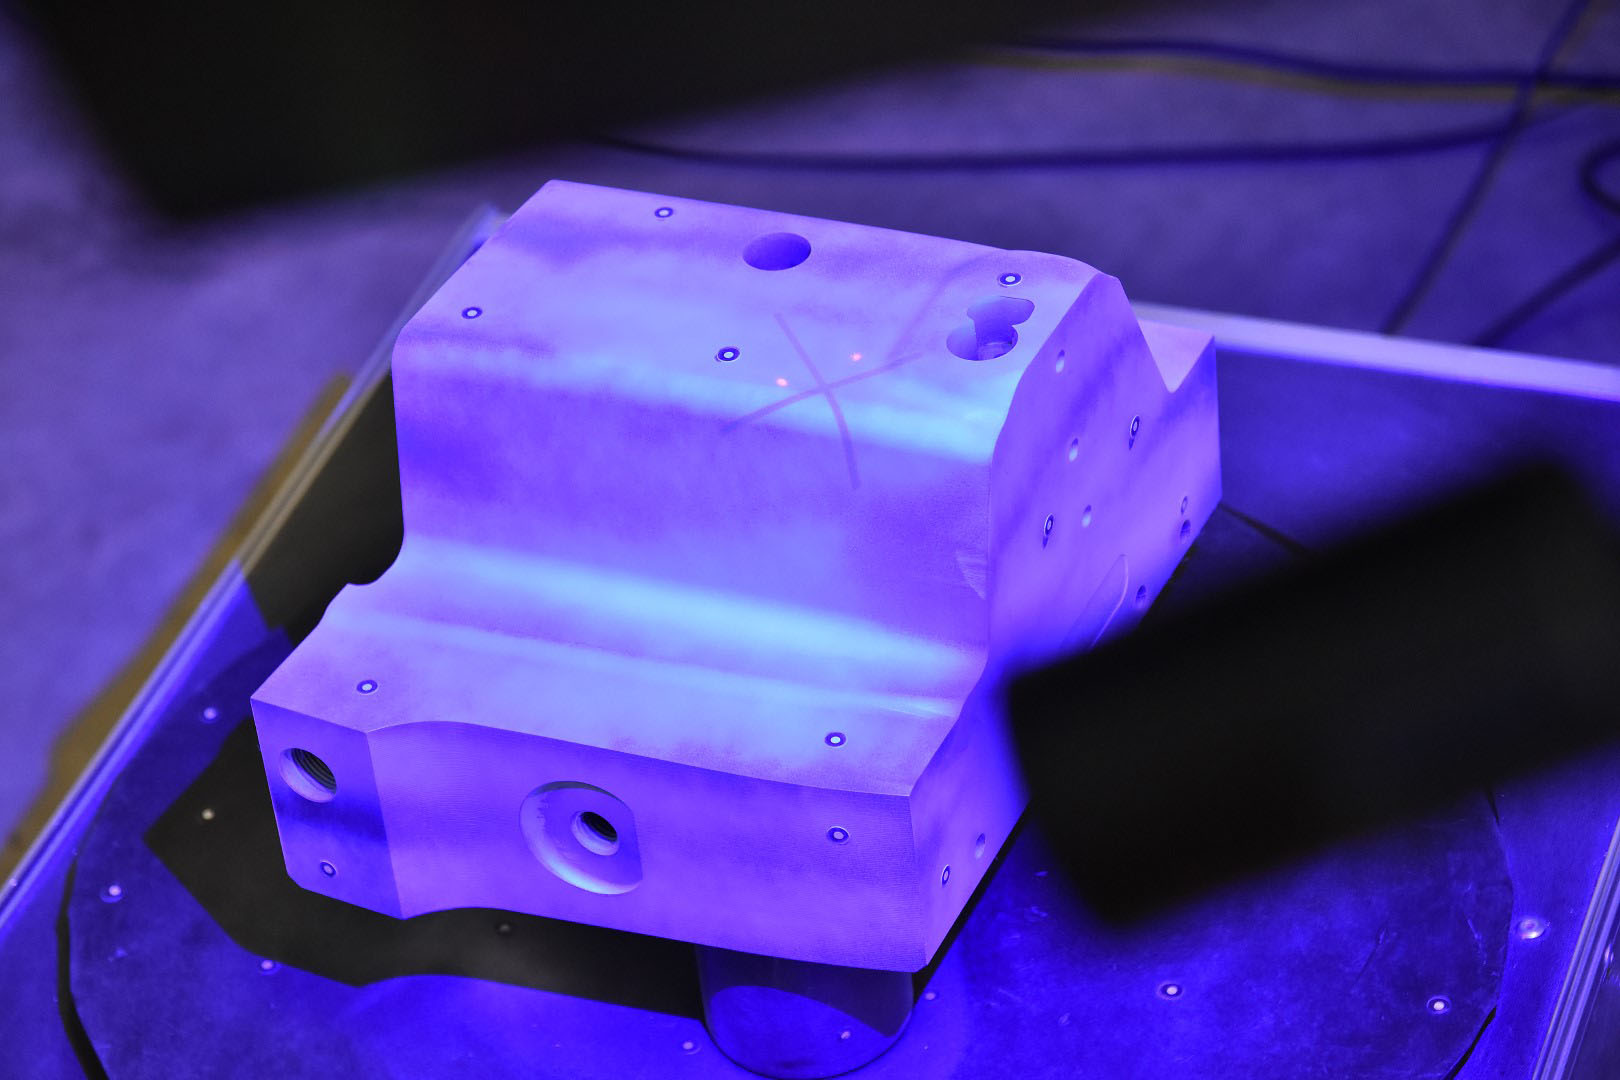 Ein Stahleinsatz befindet sich zentriert auf einer Drehscheibe in einem technischen Labor. Ein 3D-Scanner, der über der Drehscheibe positioniert ist, digitalisiert und analysiert das Objekt sorgfältig.